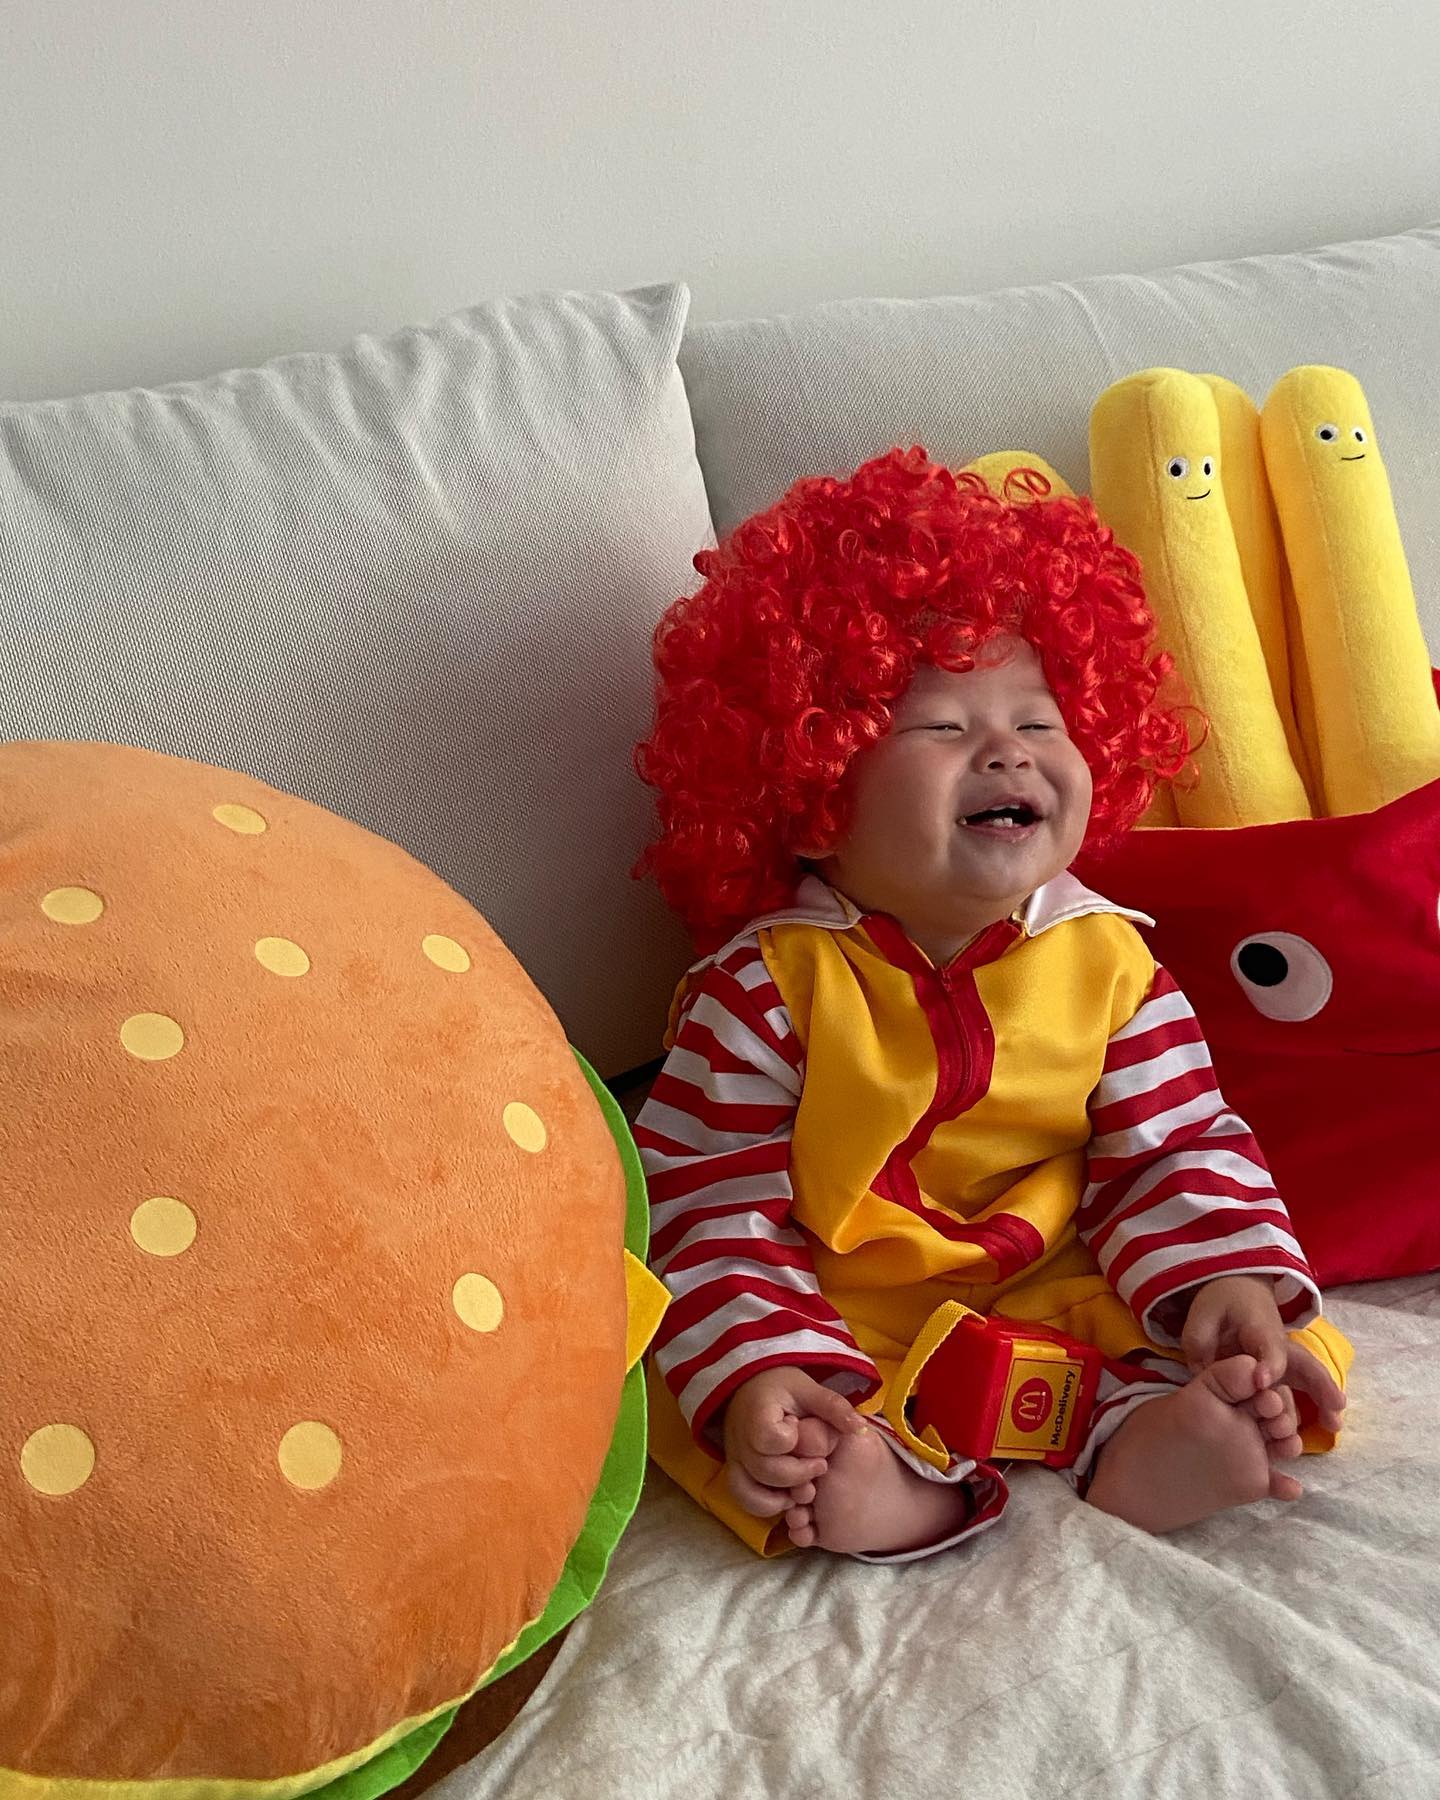 랜선 이모들의 사랑을 듬뿍 받고 있는 젤리의 맥도날드 컨셉 사진. 절로 웃음이 나는 귀여운 모습에 반응이 폭발적이었다.